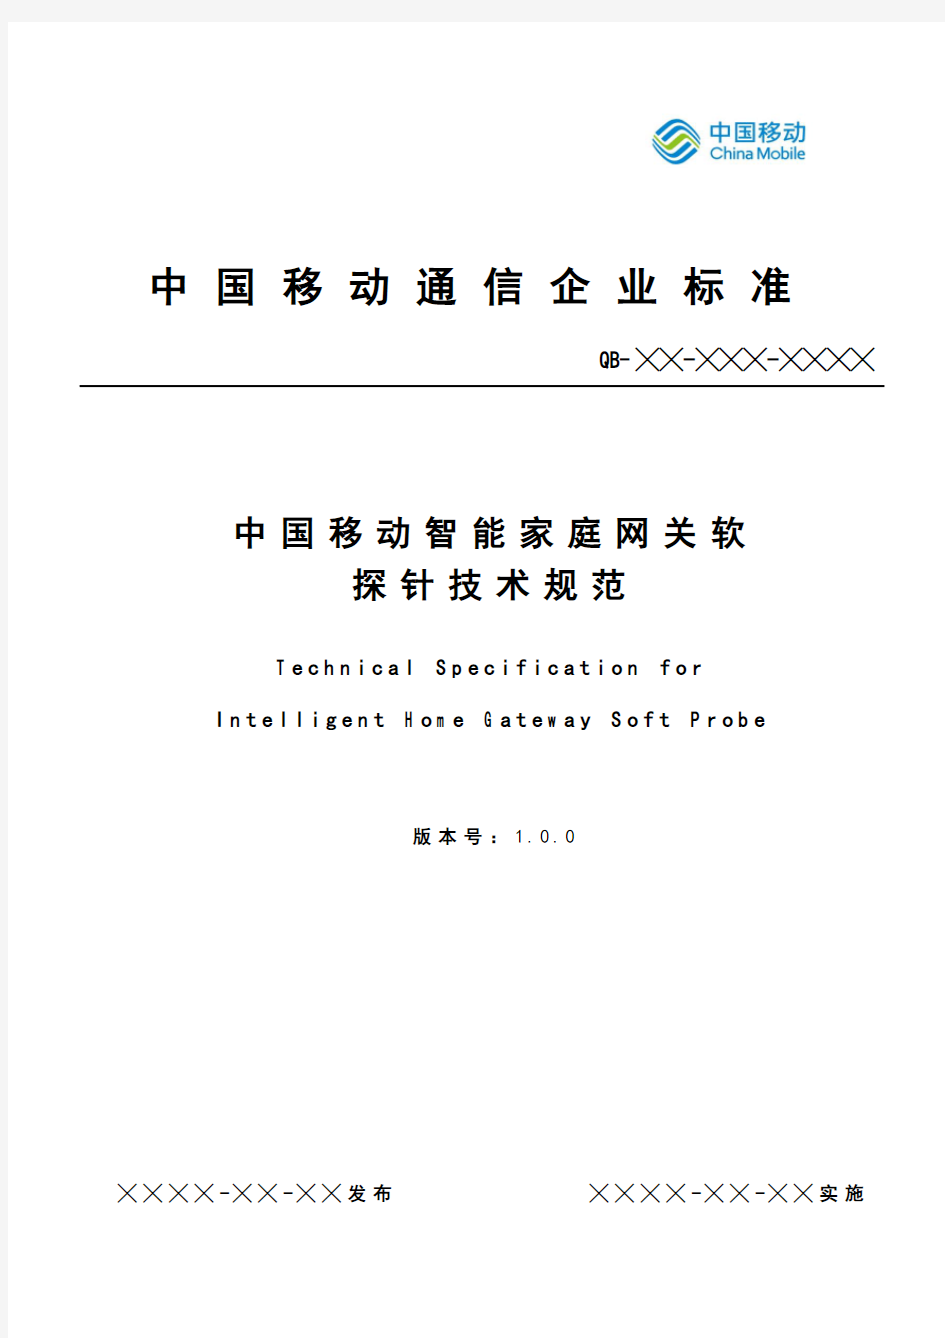 中国移动智能家庭网关软探针技术规范v1.0.0